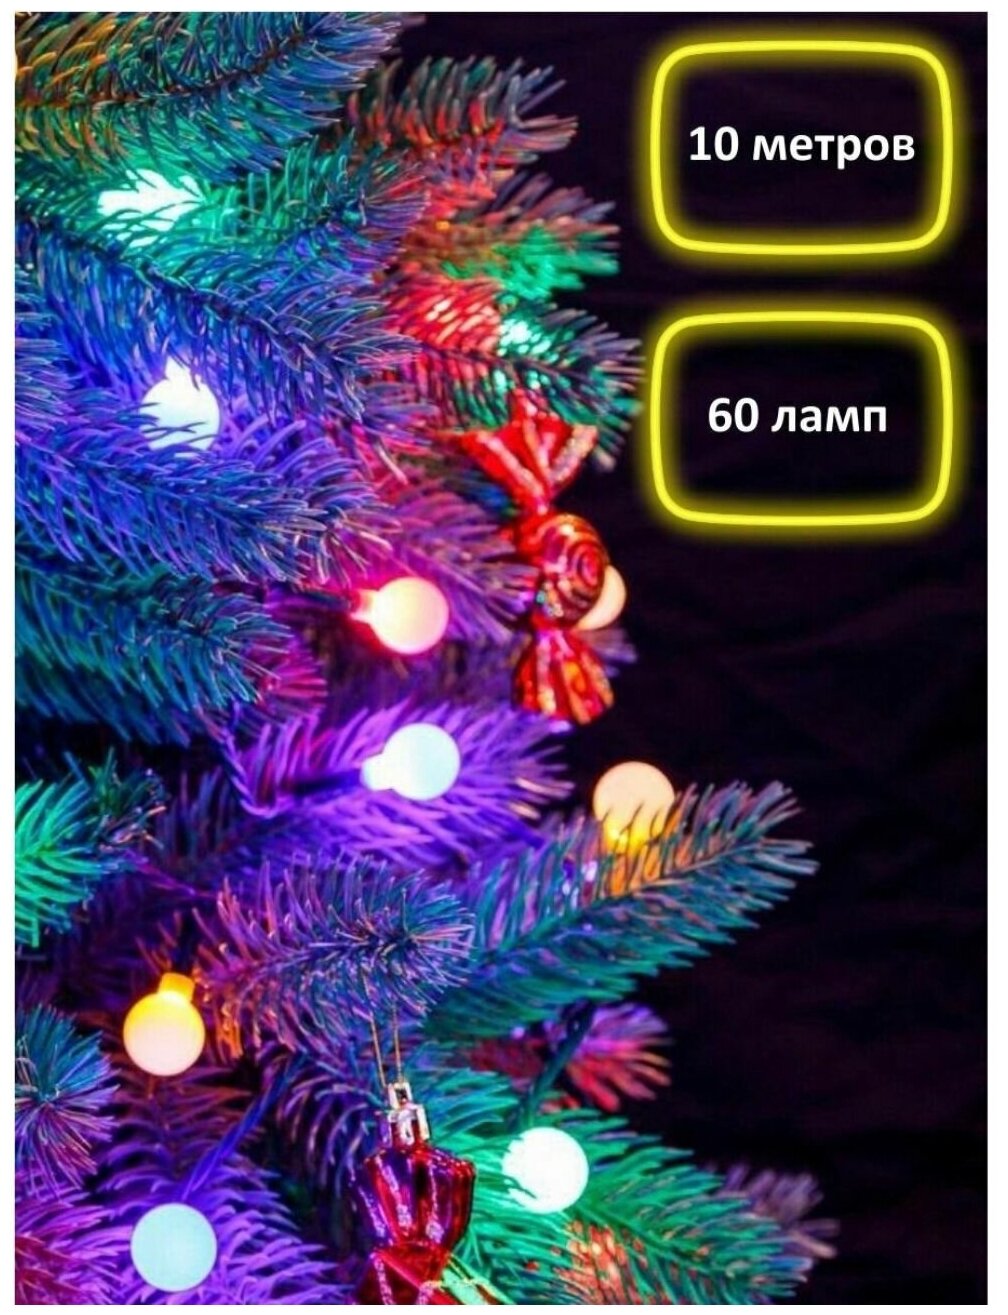 Гирлянда светодиодная, гирлянда шарики, RGB гирлянда GCL CH-7053, новогодняя гирлянда на елку, разноцветная, 10 м, темный провод, соединяемая